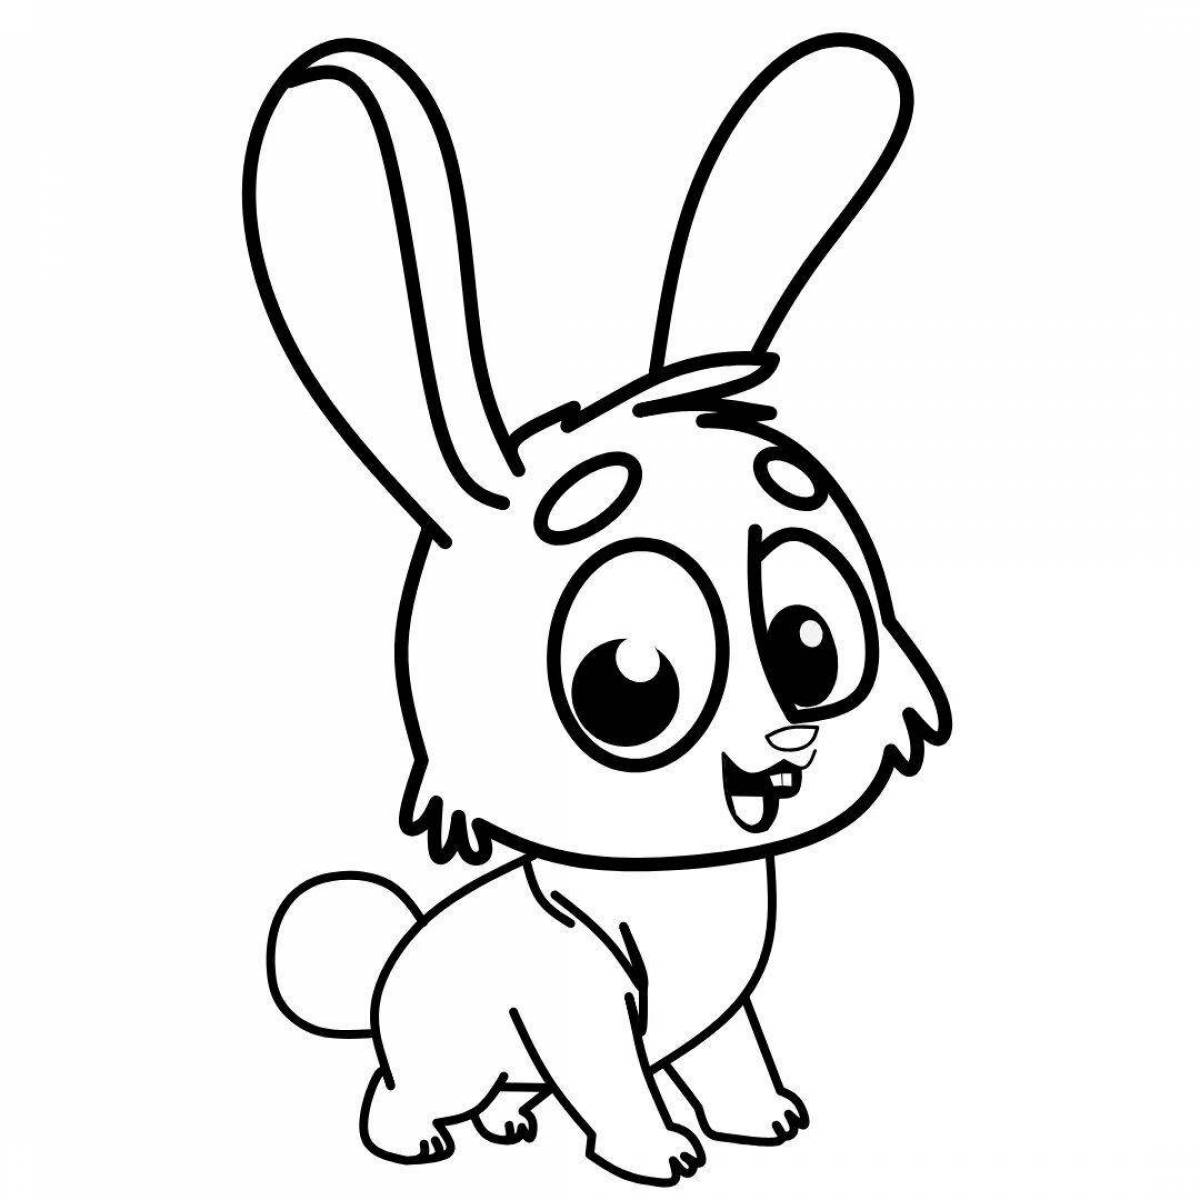 Coloring book adorable cartoon hare